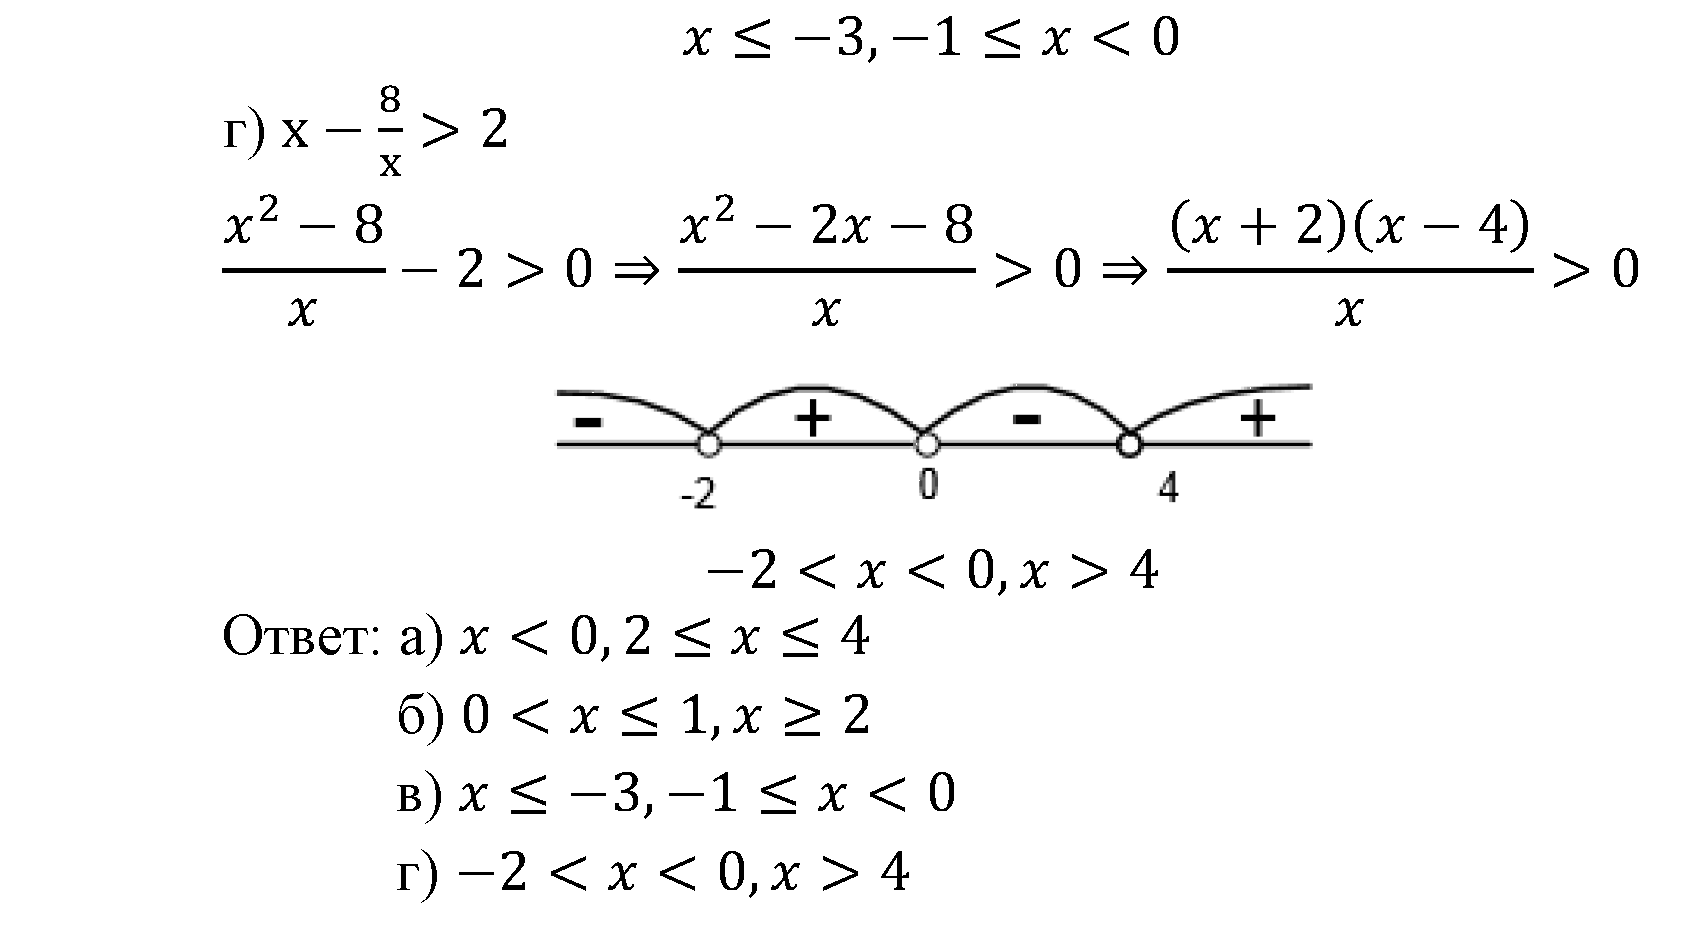 страница 18 задача 2.19 алгебра 9 класс Мордкович 2010 год